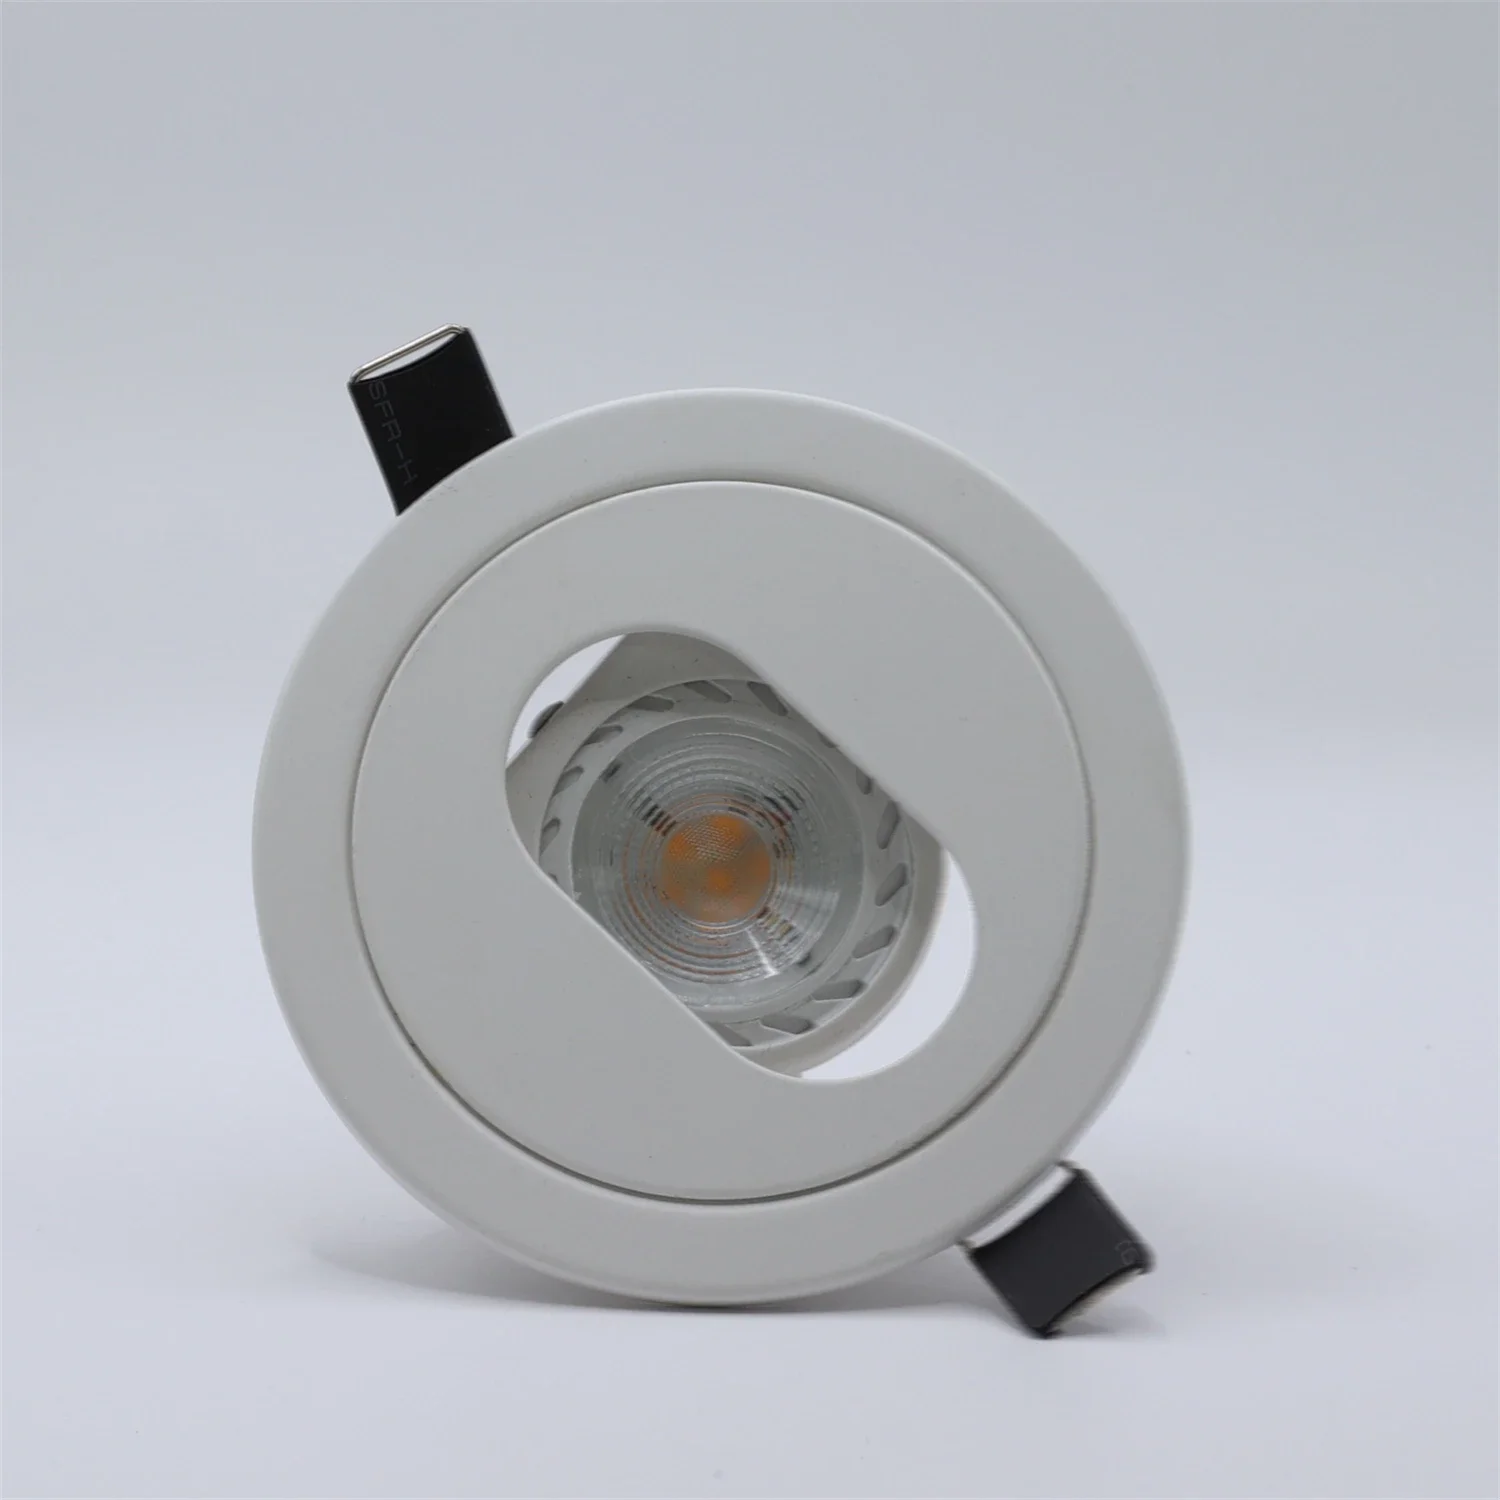 Встраиваемая декоративная лампа для светильника MR16, осветительная лампа для светильника с видоискателем GU10, 6 Вт, фоторамка